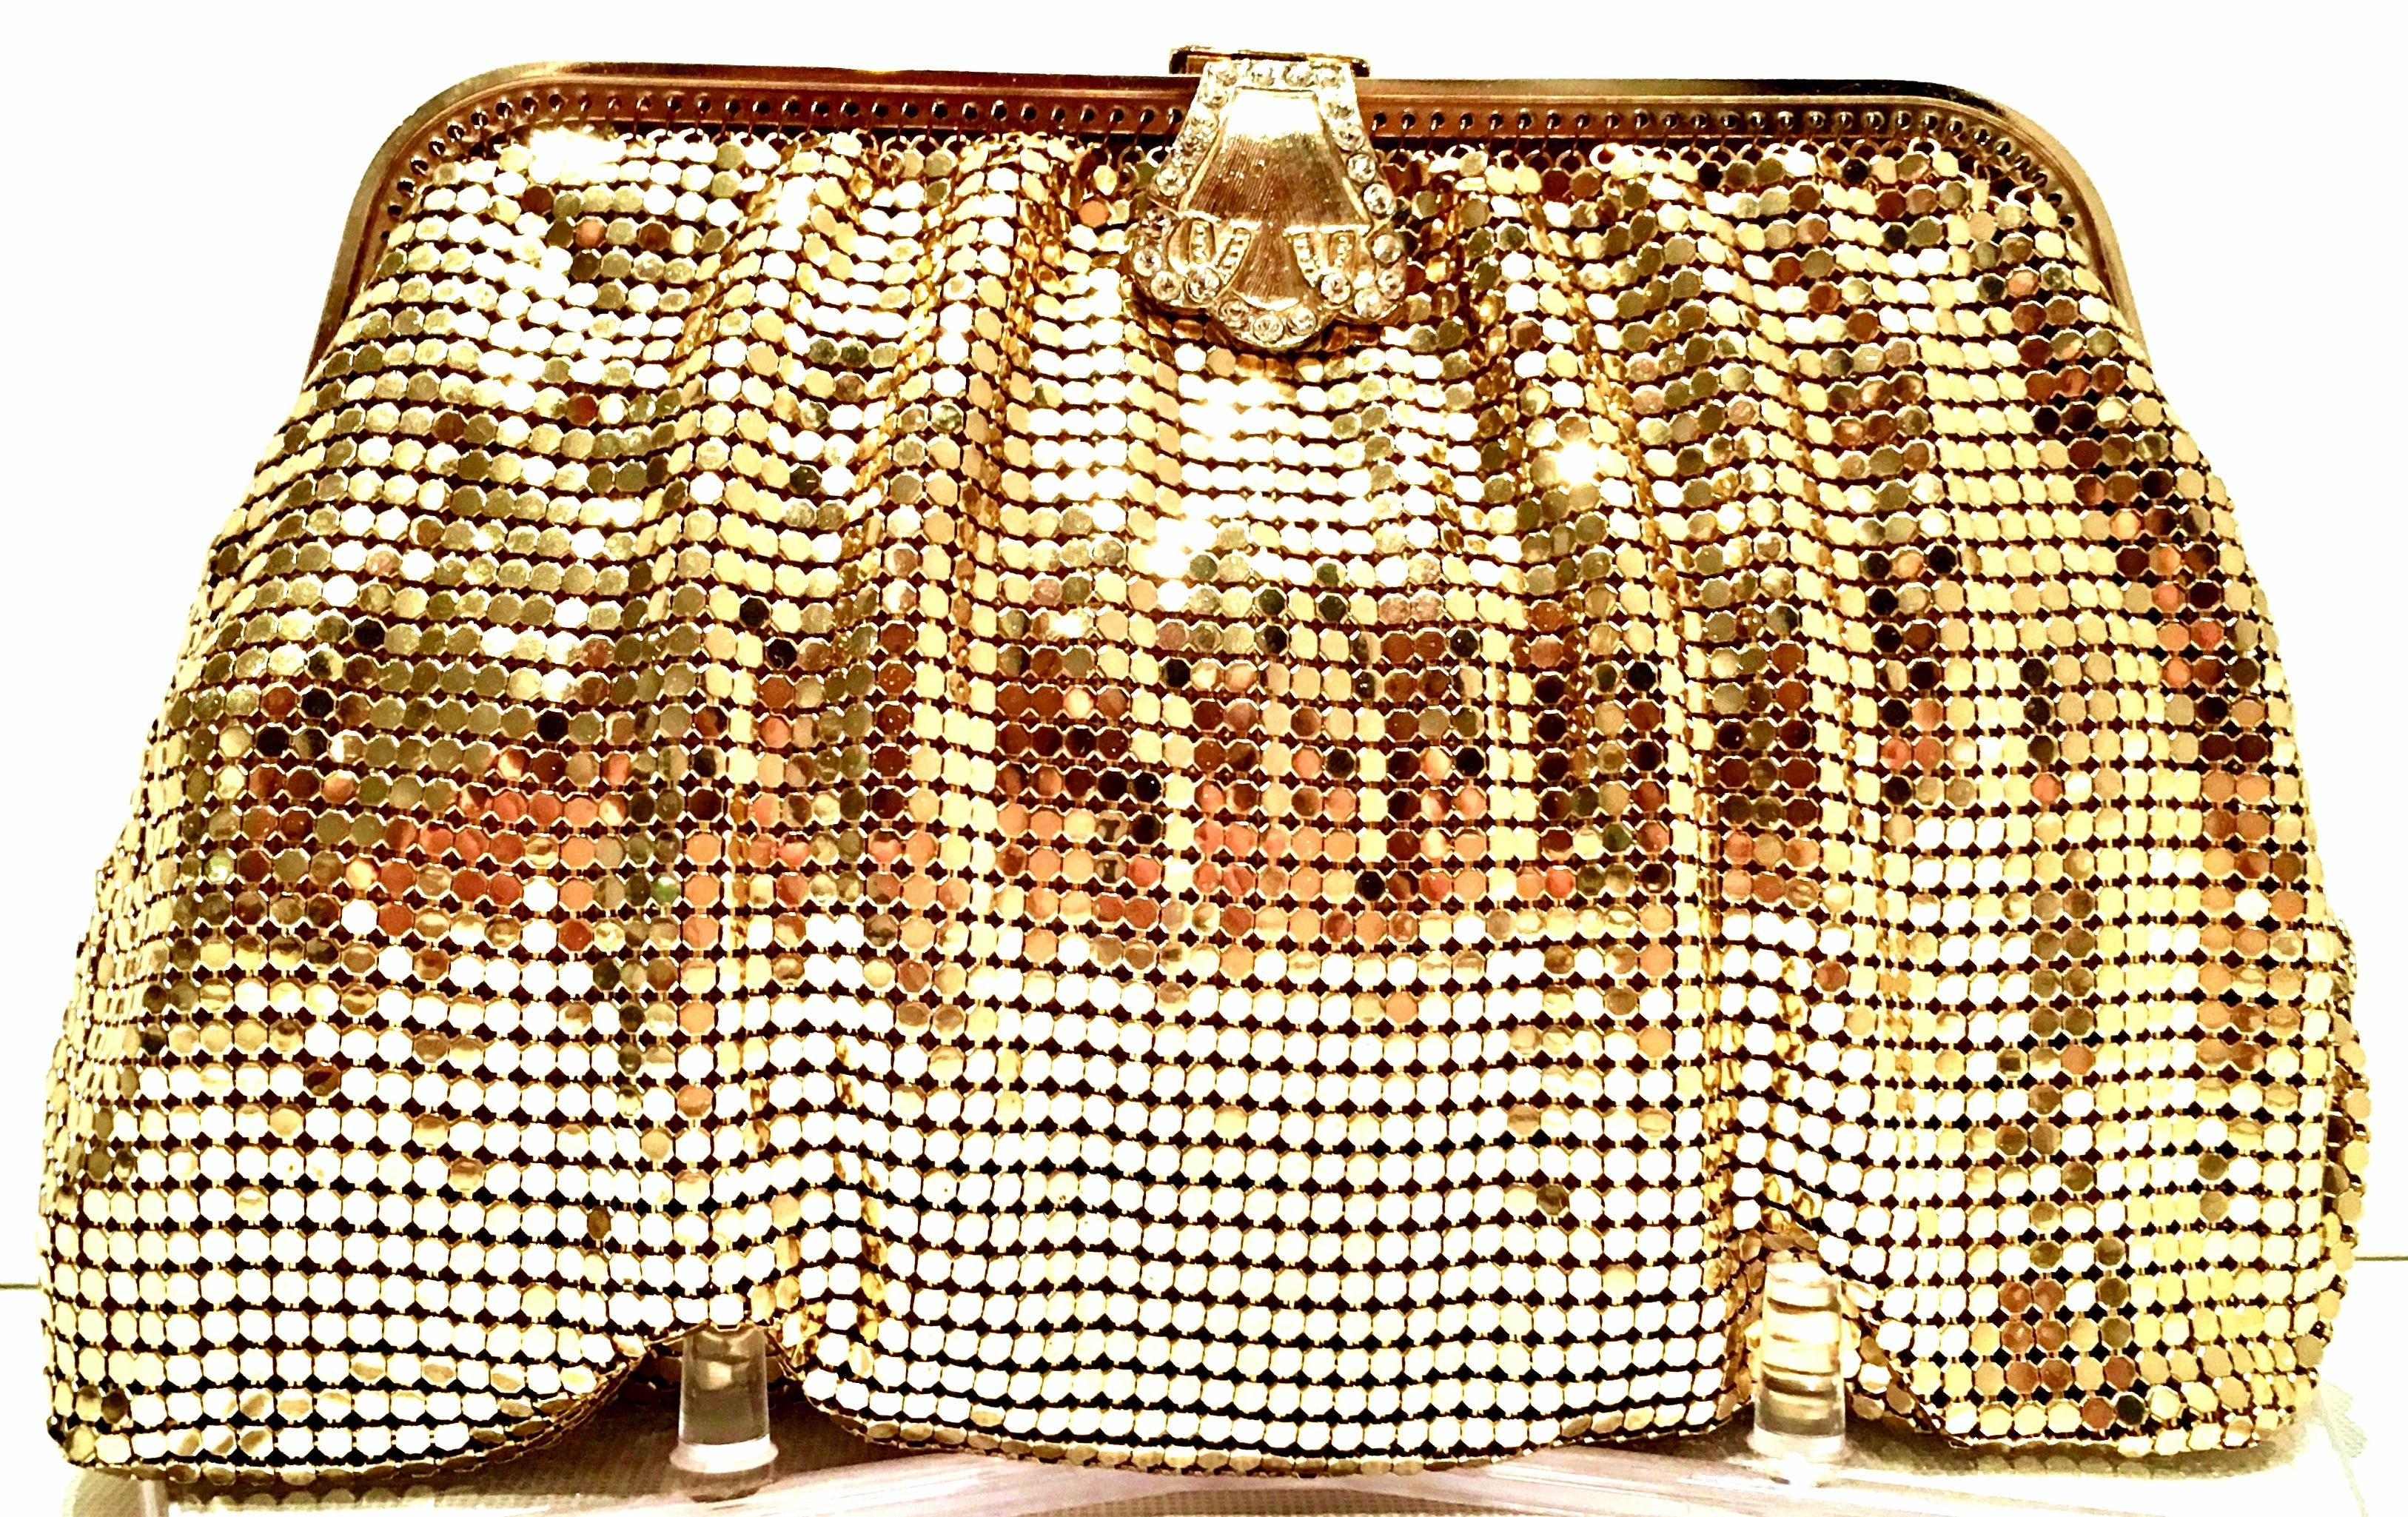 Brown 20th Century Gold Metal Mesh & Swarovksi Crystal Evening Bag By, Whiting & Davis